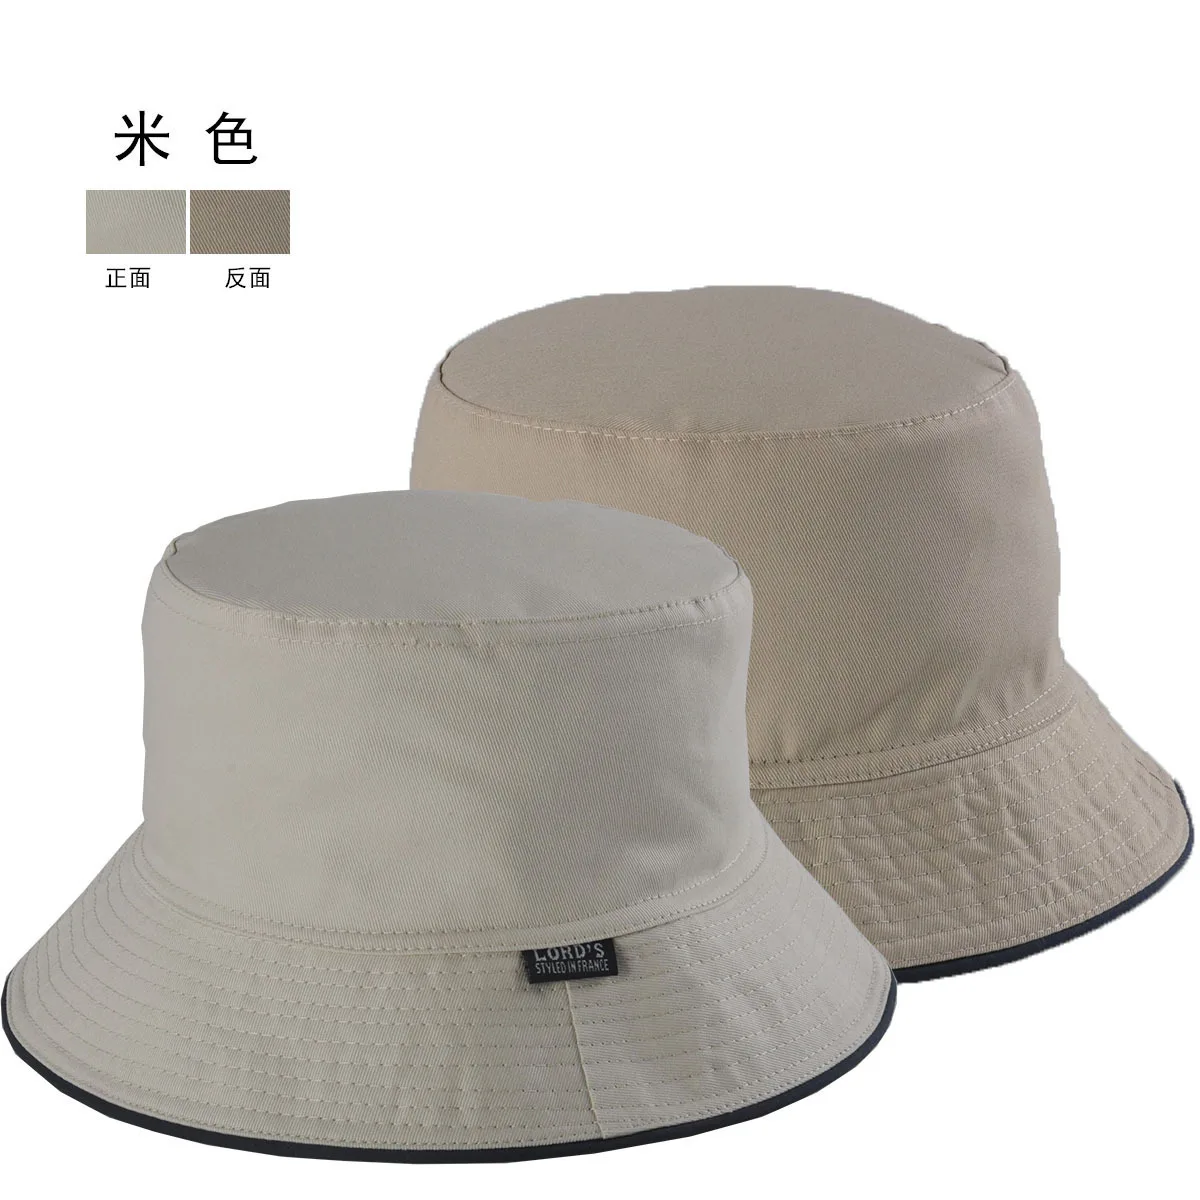 Высокое качество, хлопок, рыболовная шляпа, два размера, одежда размера плюс, Панама, шляпа с большой головой, для мужчин и женщин, большой размер, Панамы 56-58 см, 58-60 см - Цвет: A11 beige